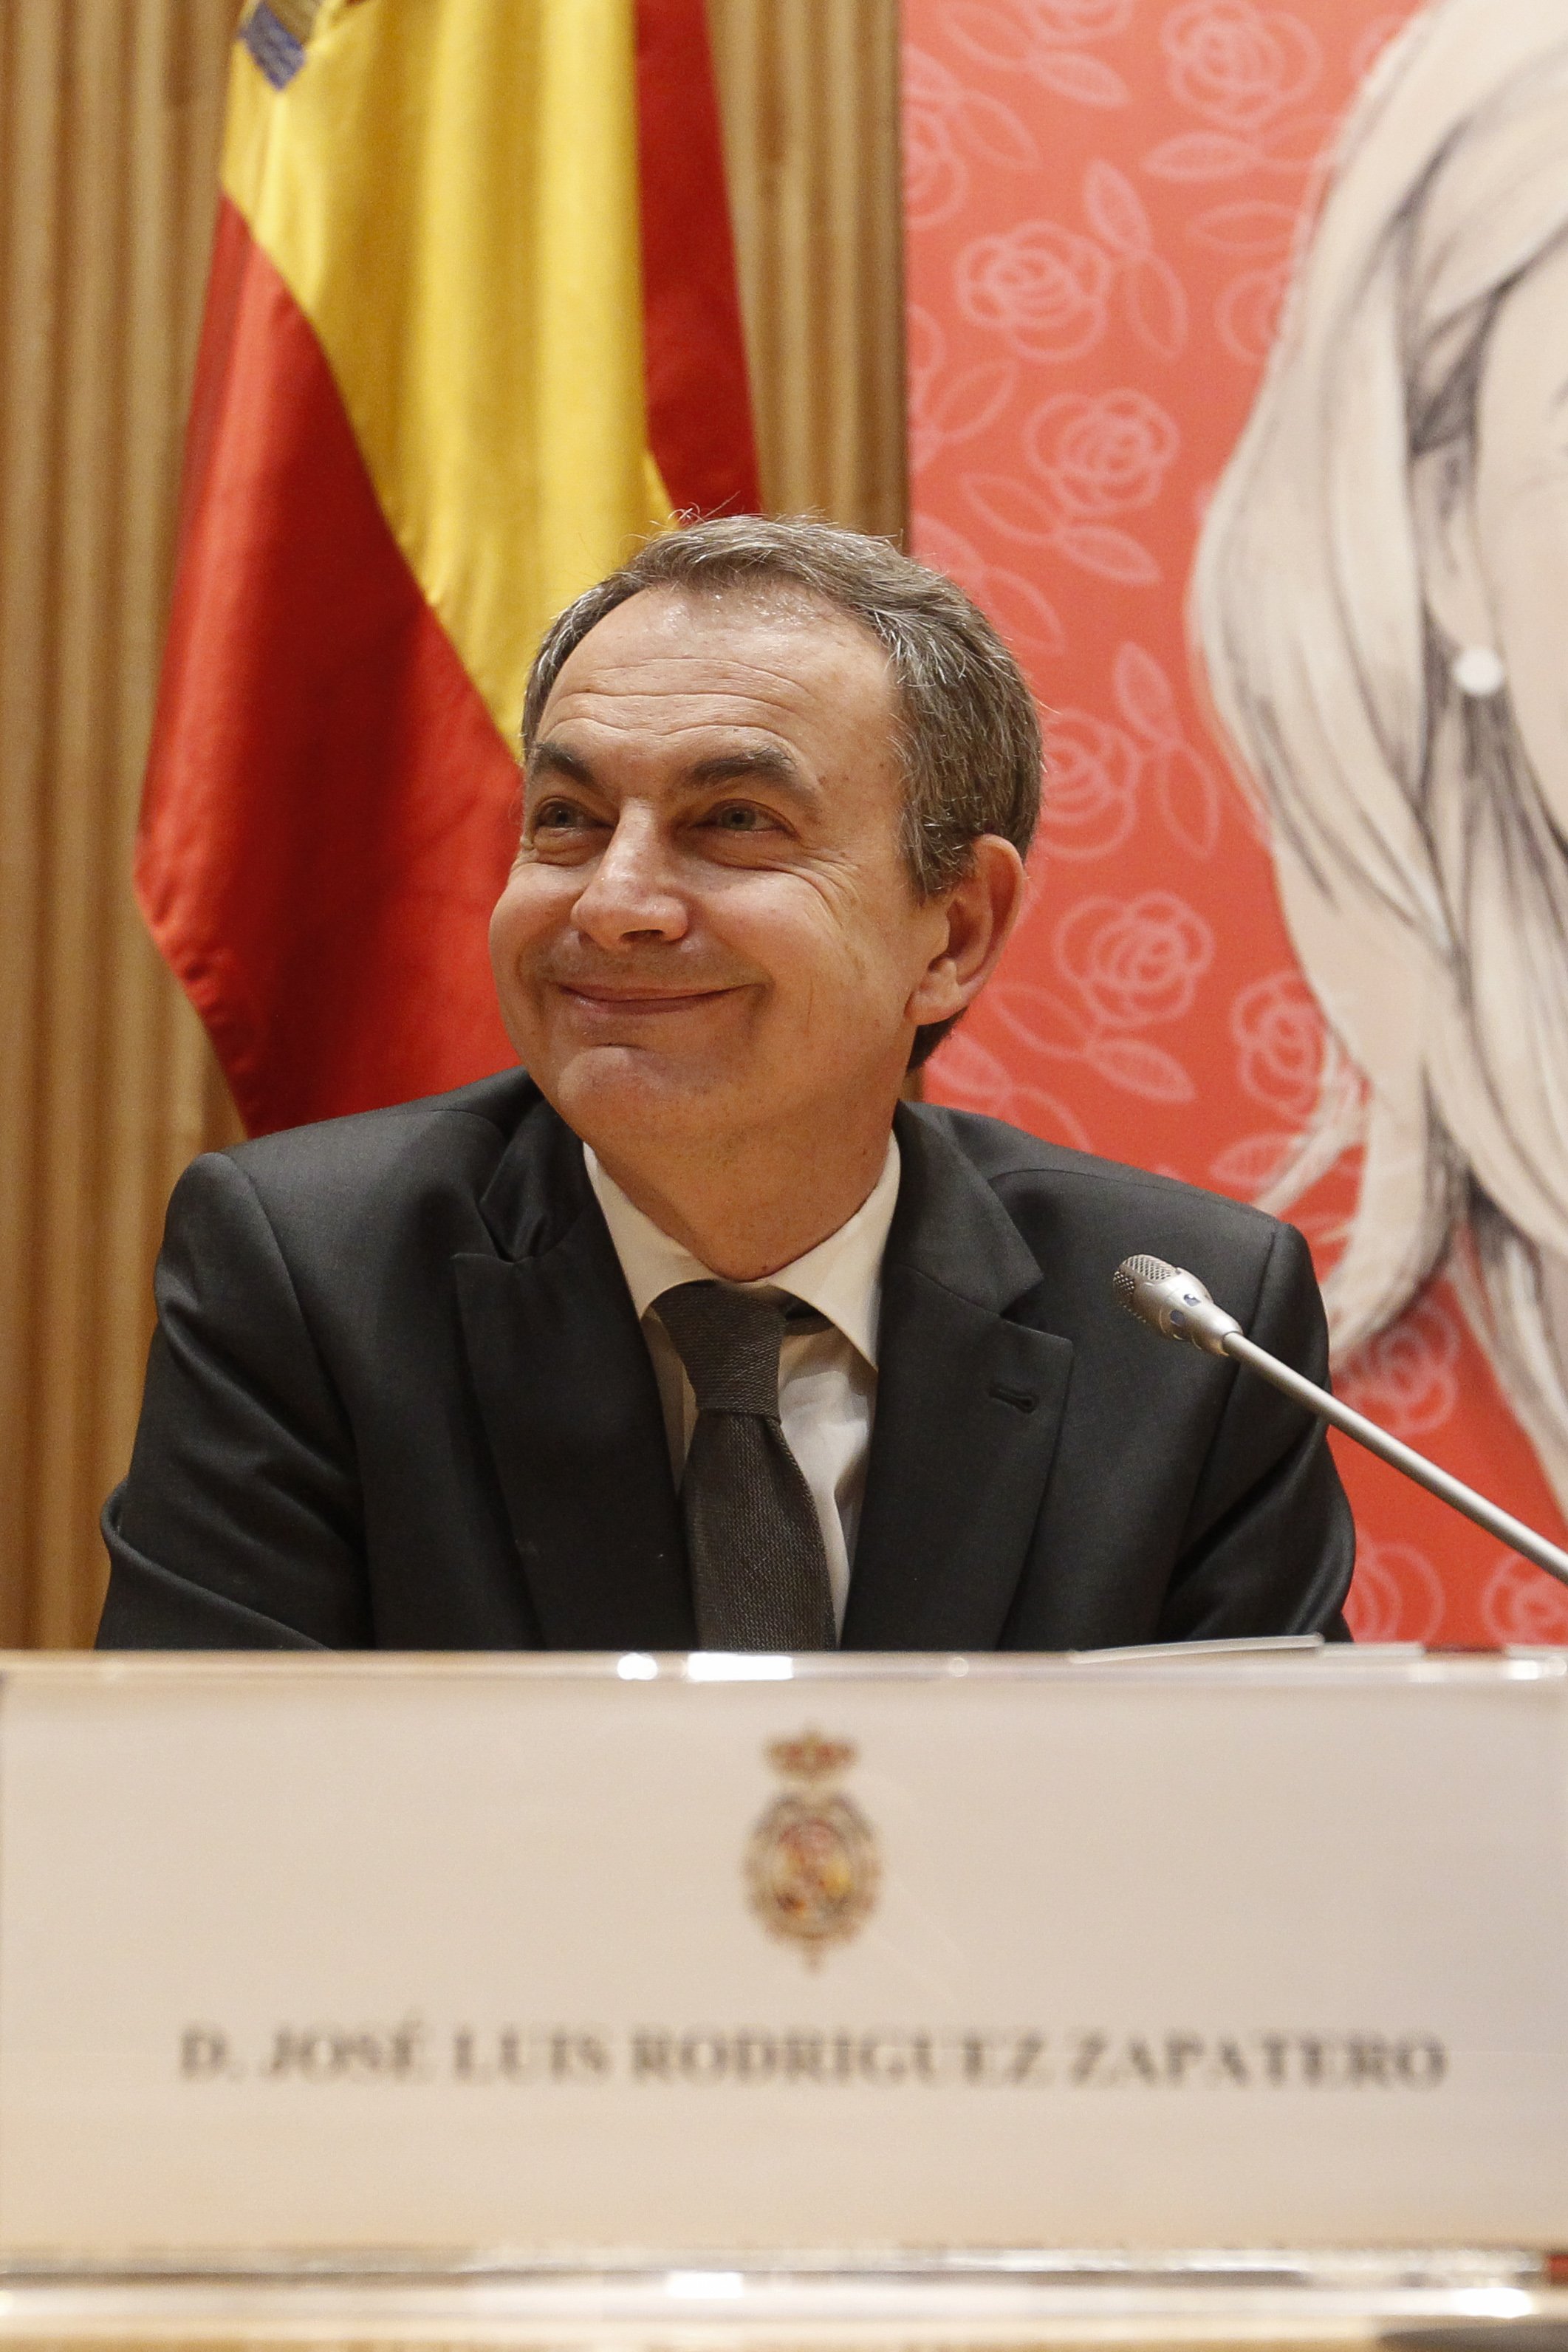 El polèmic xalet de luxe que Zapatero ha comprat a Madrid (amb rebaixa del 50%)